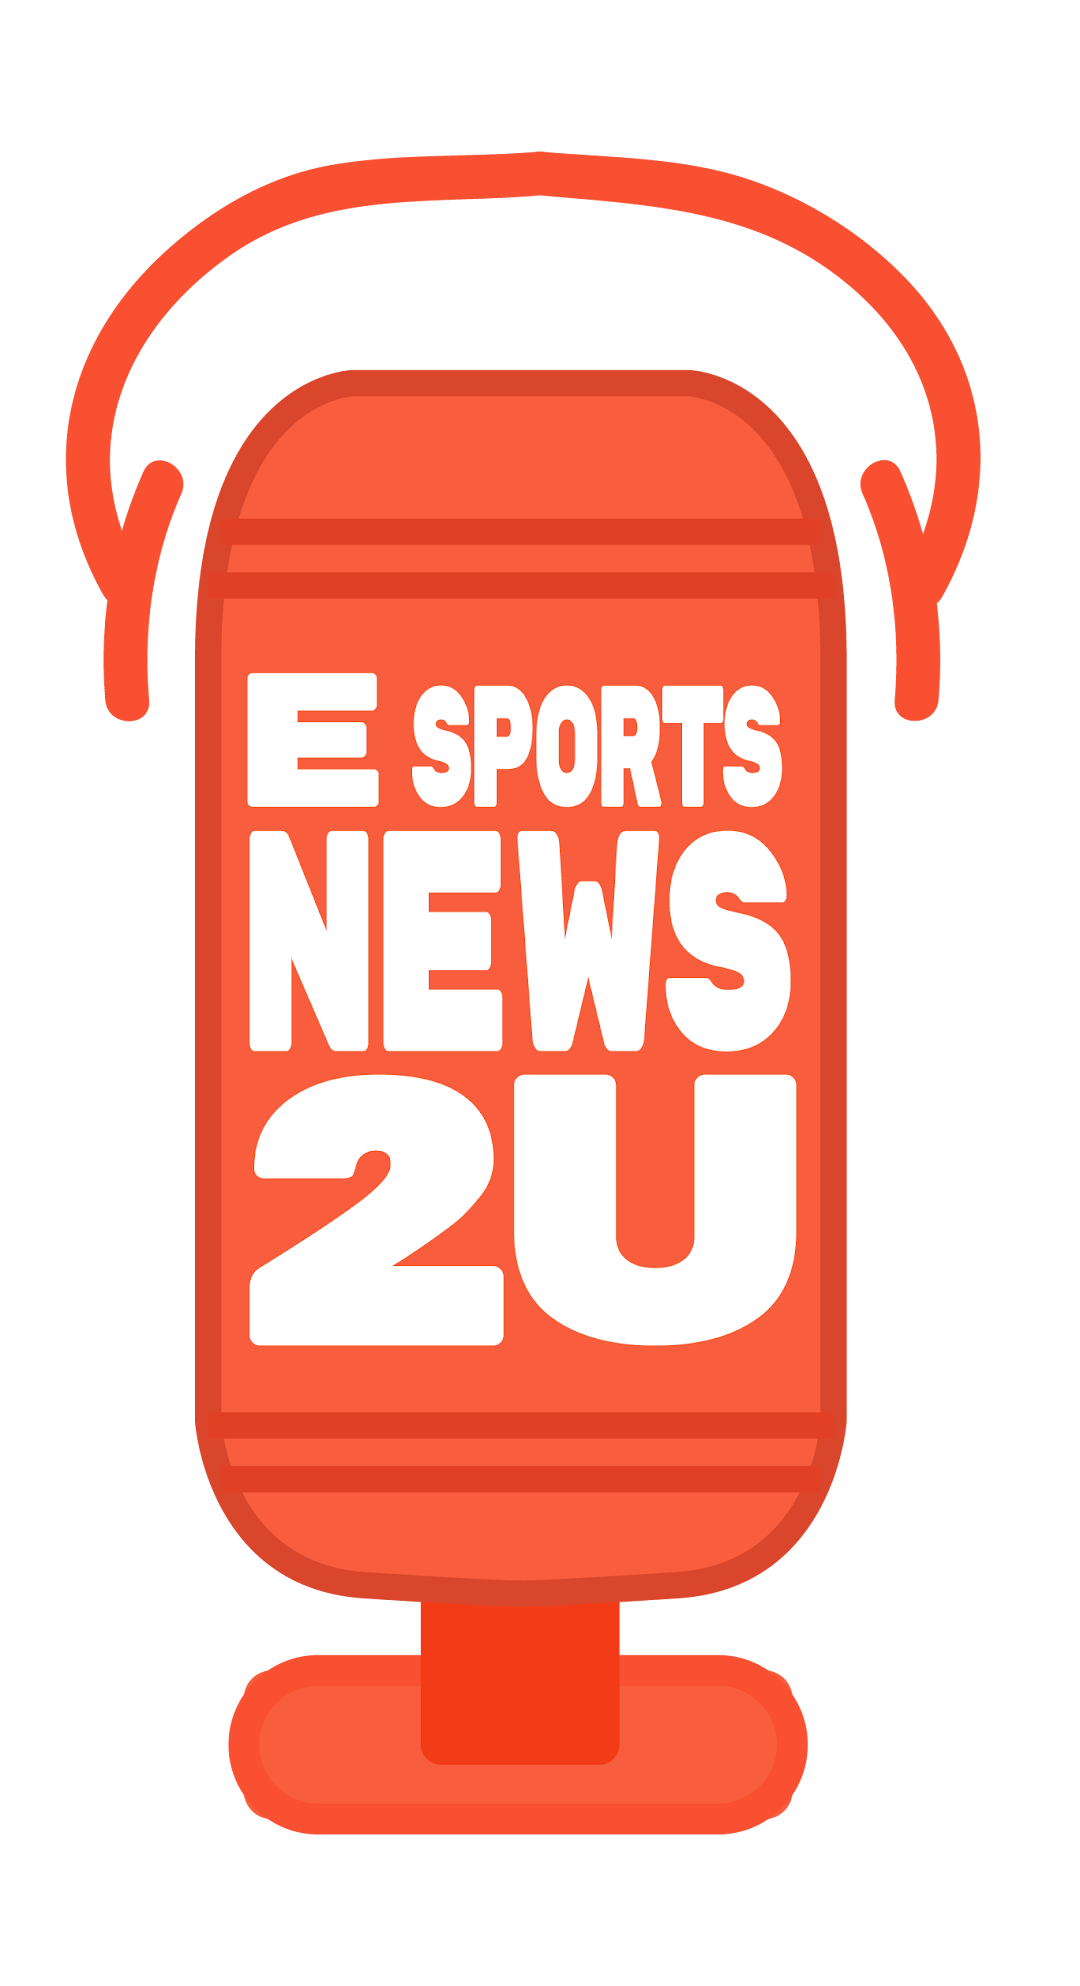 ESports News 2u